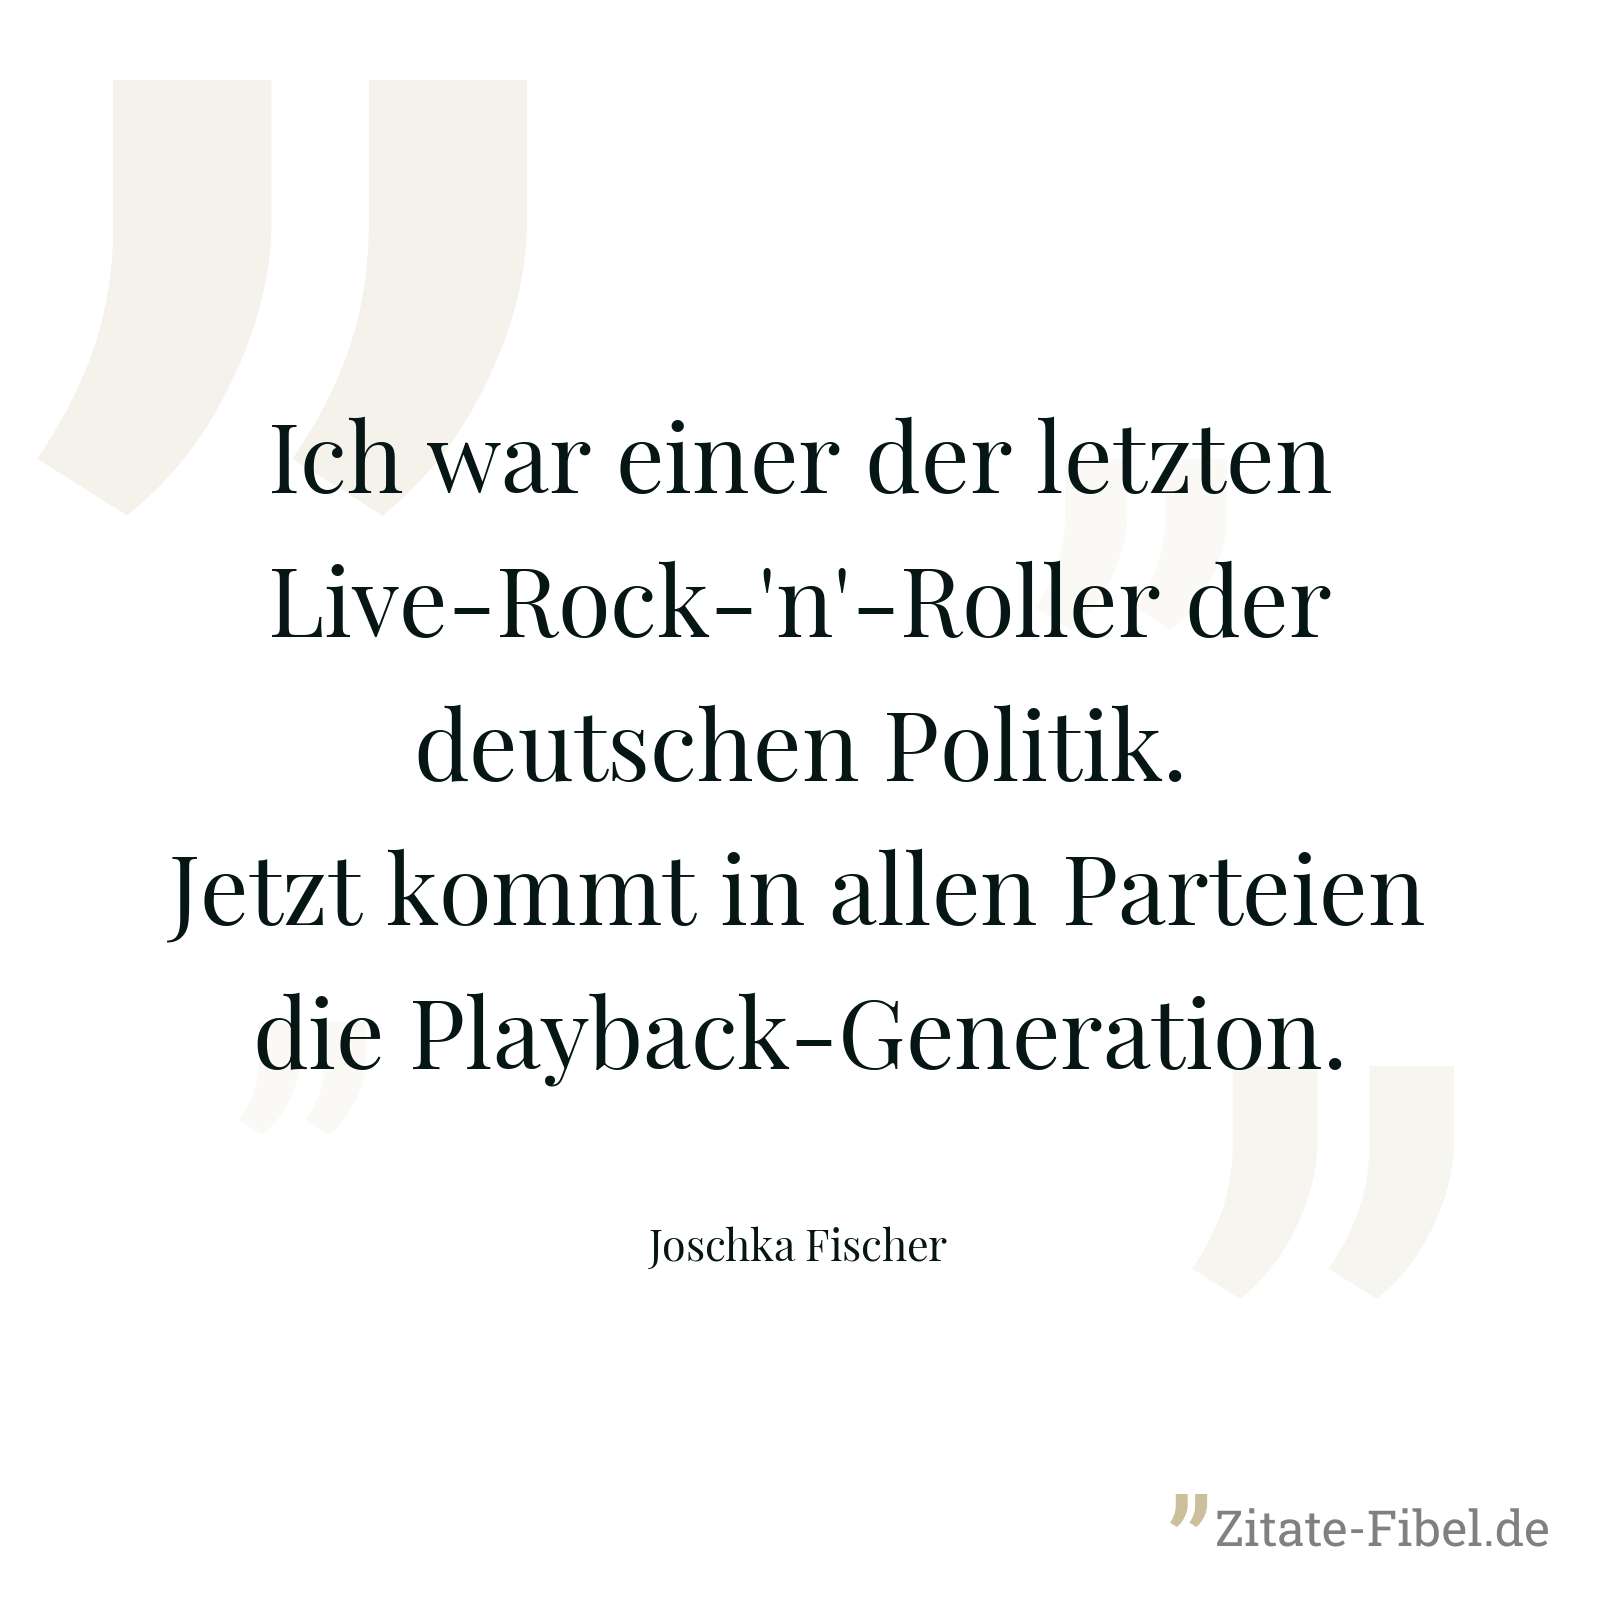 Ich war einer der letzten Live-Rock-'n'-Roller der deutschen Politik. Jetzt kommt in allen Parteien die Playback-Generation. - Joschka Fischer